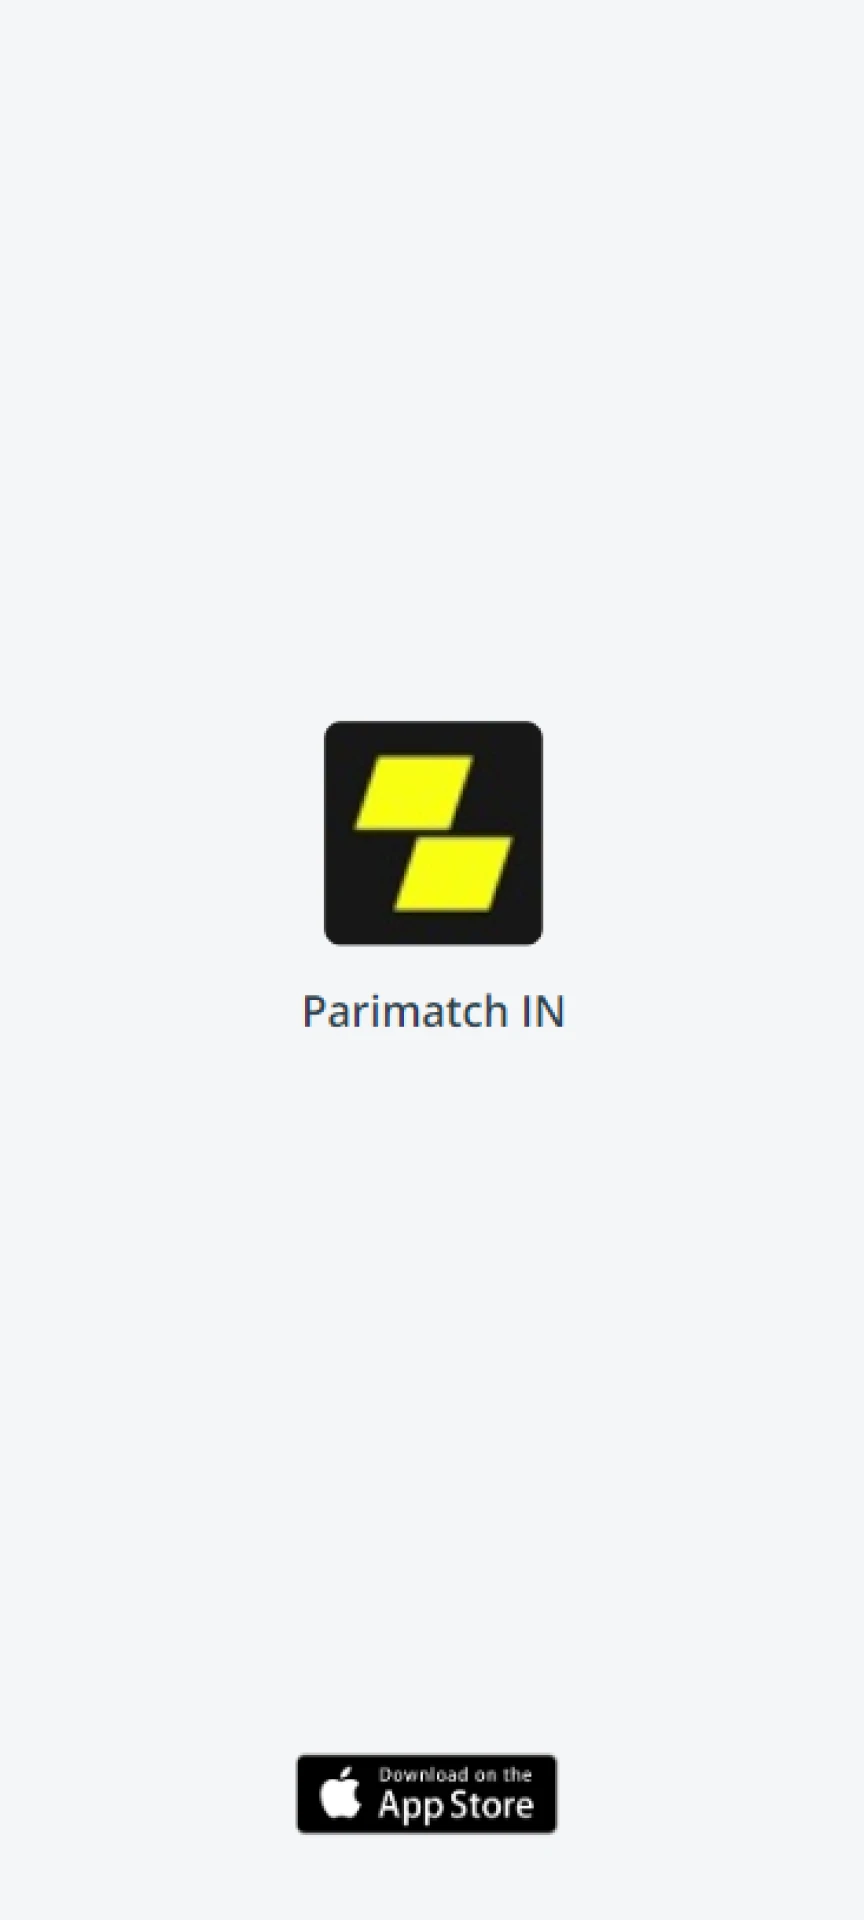 Confirme o download do aplicativo Parimatch em seu dispositivo iOS.